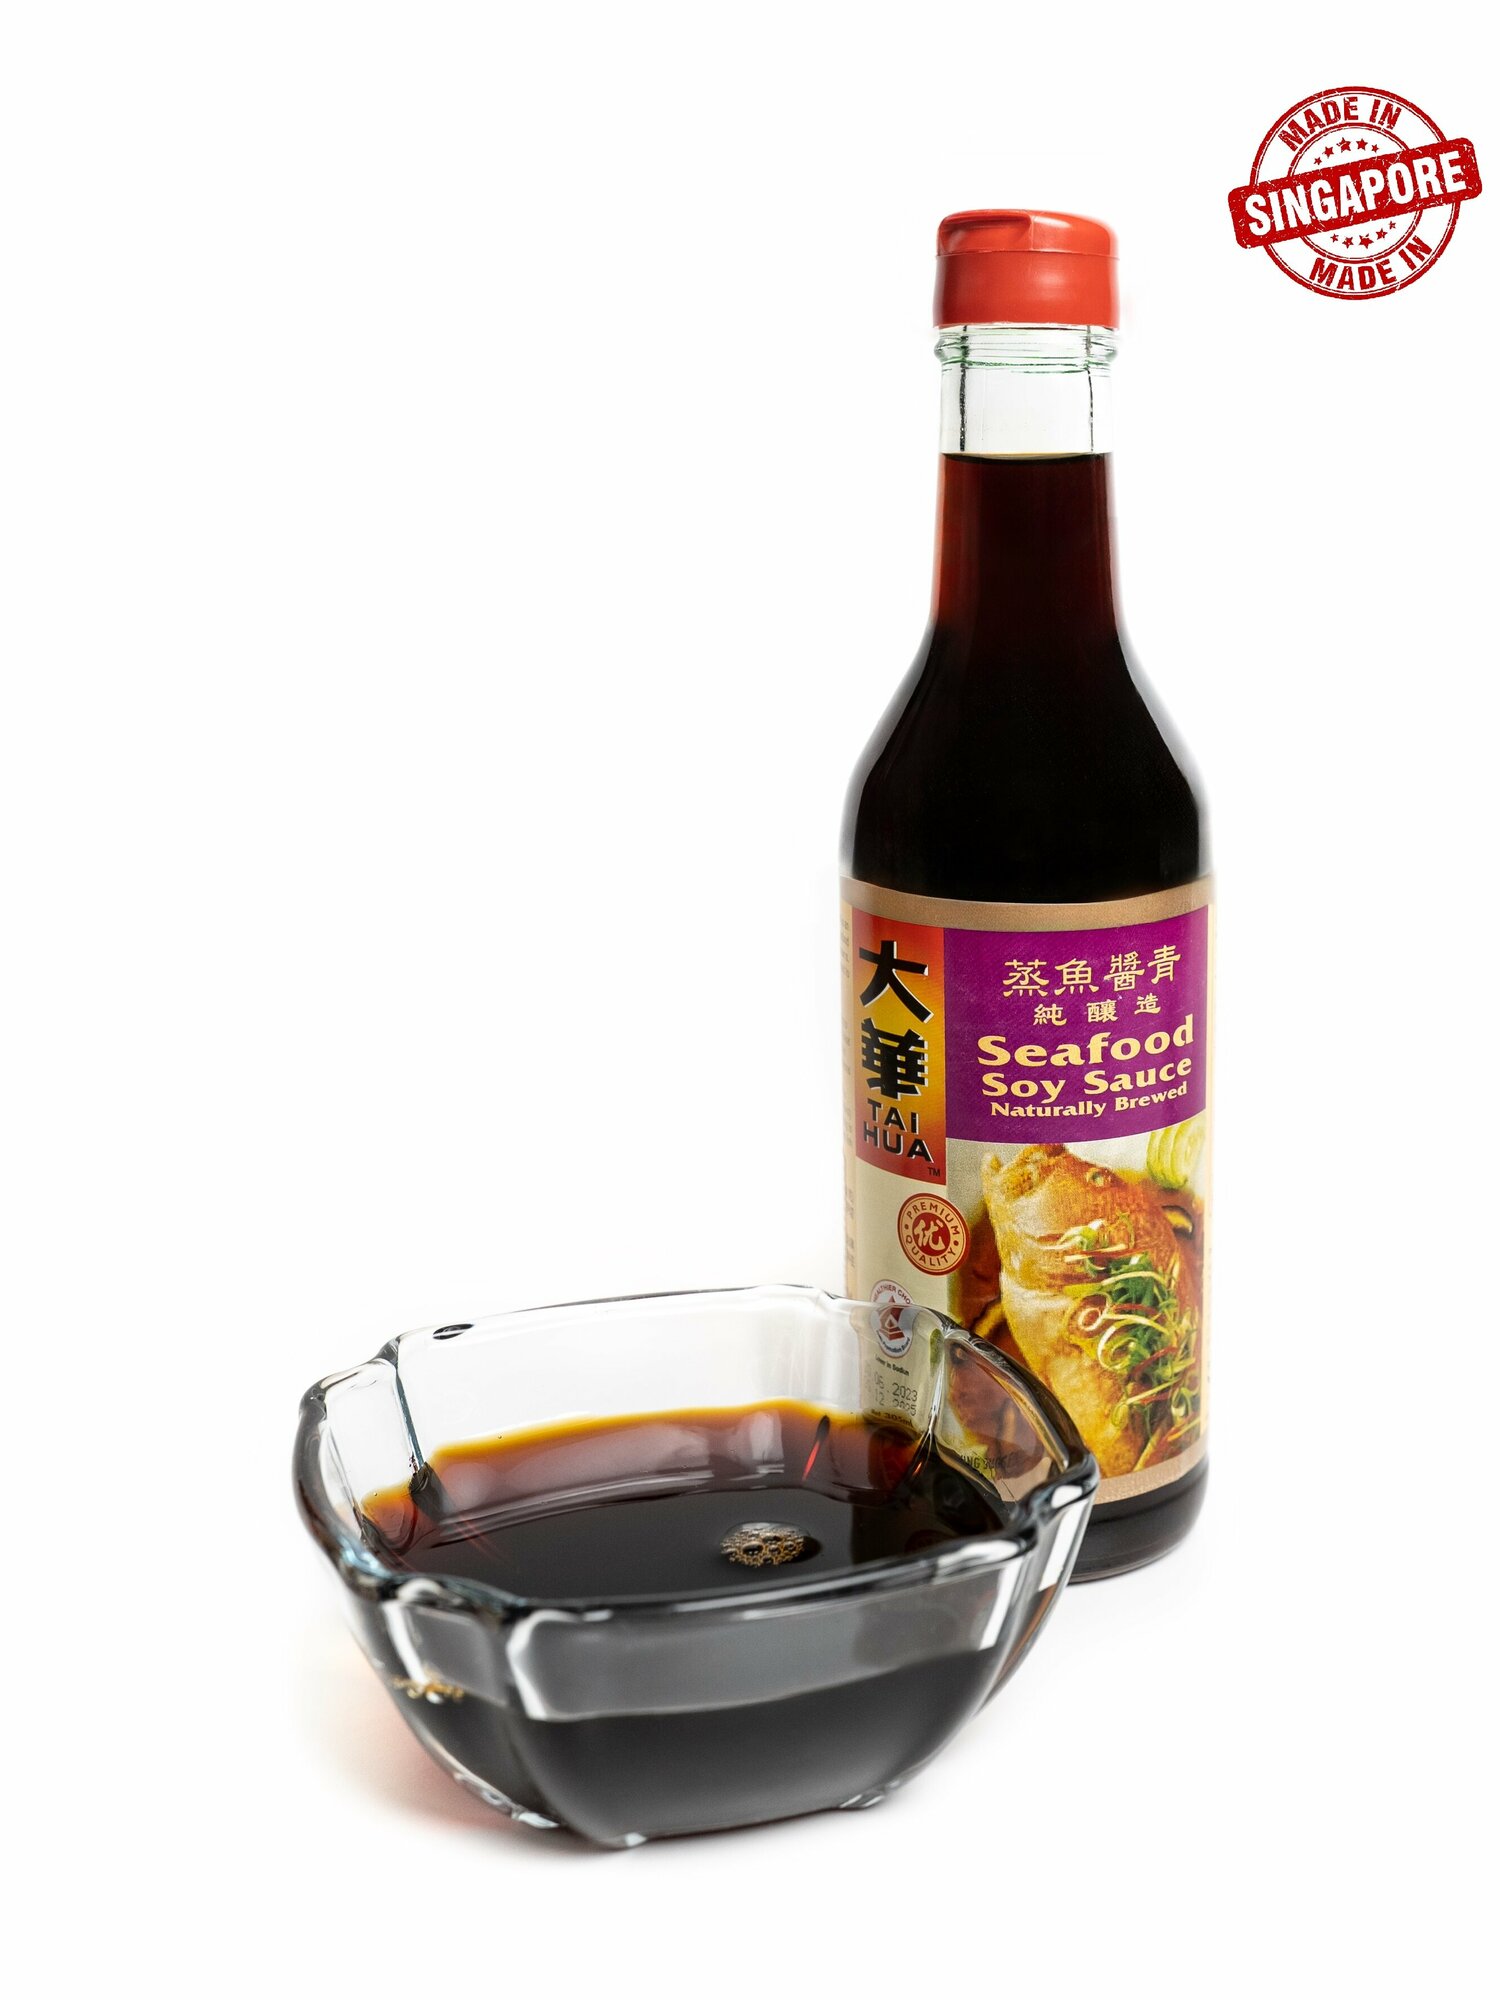 Соевый соус для морепродуктов высшего качества TAI HUA тм. (Seafood Soy Sauce) 305 мл стекло